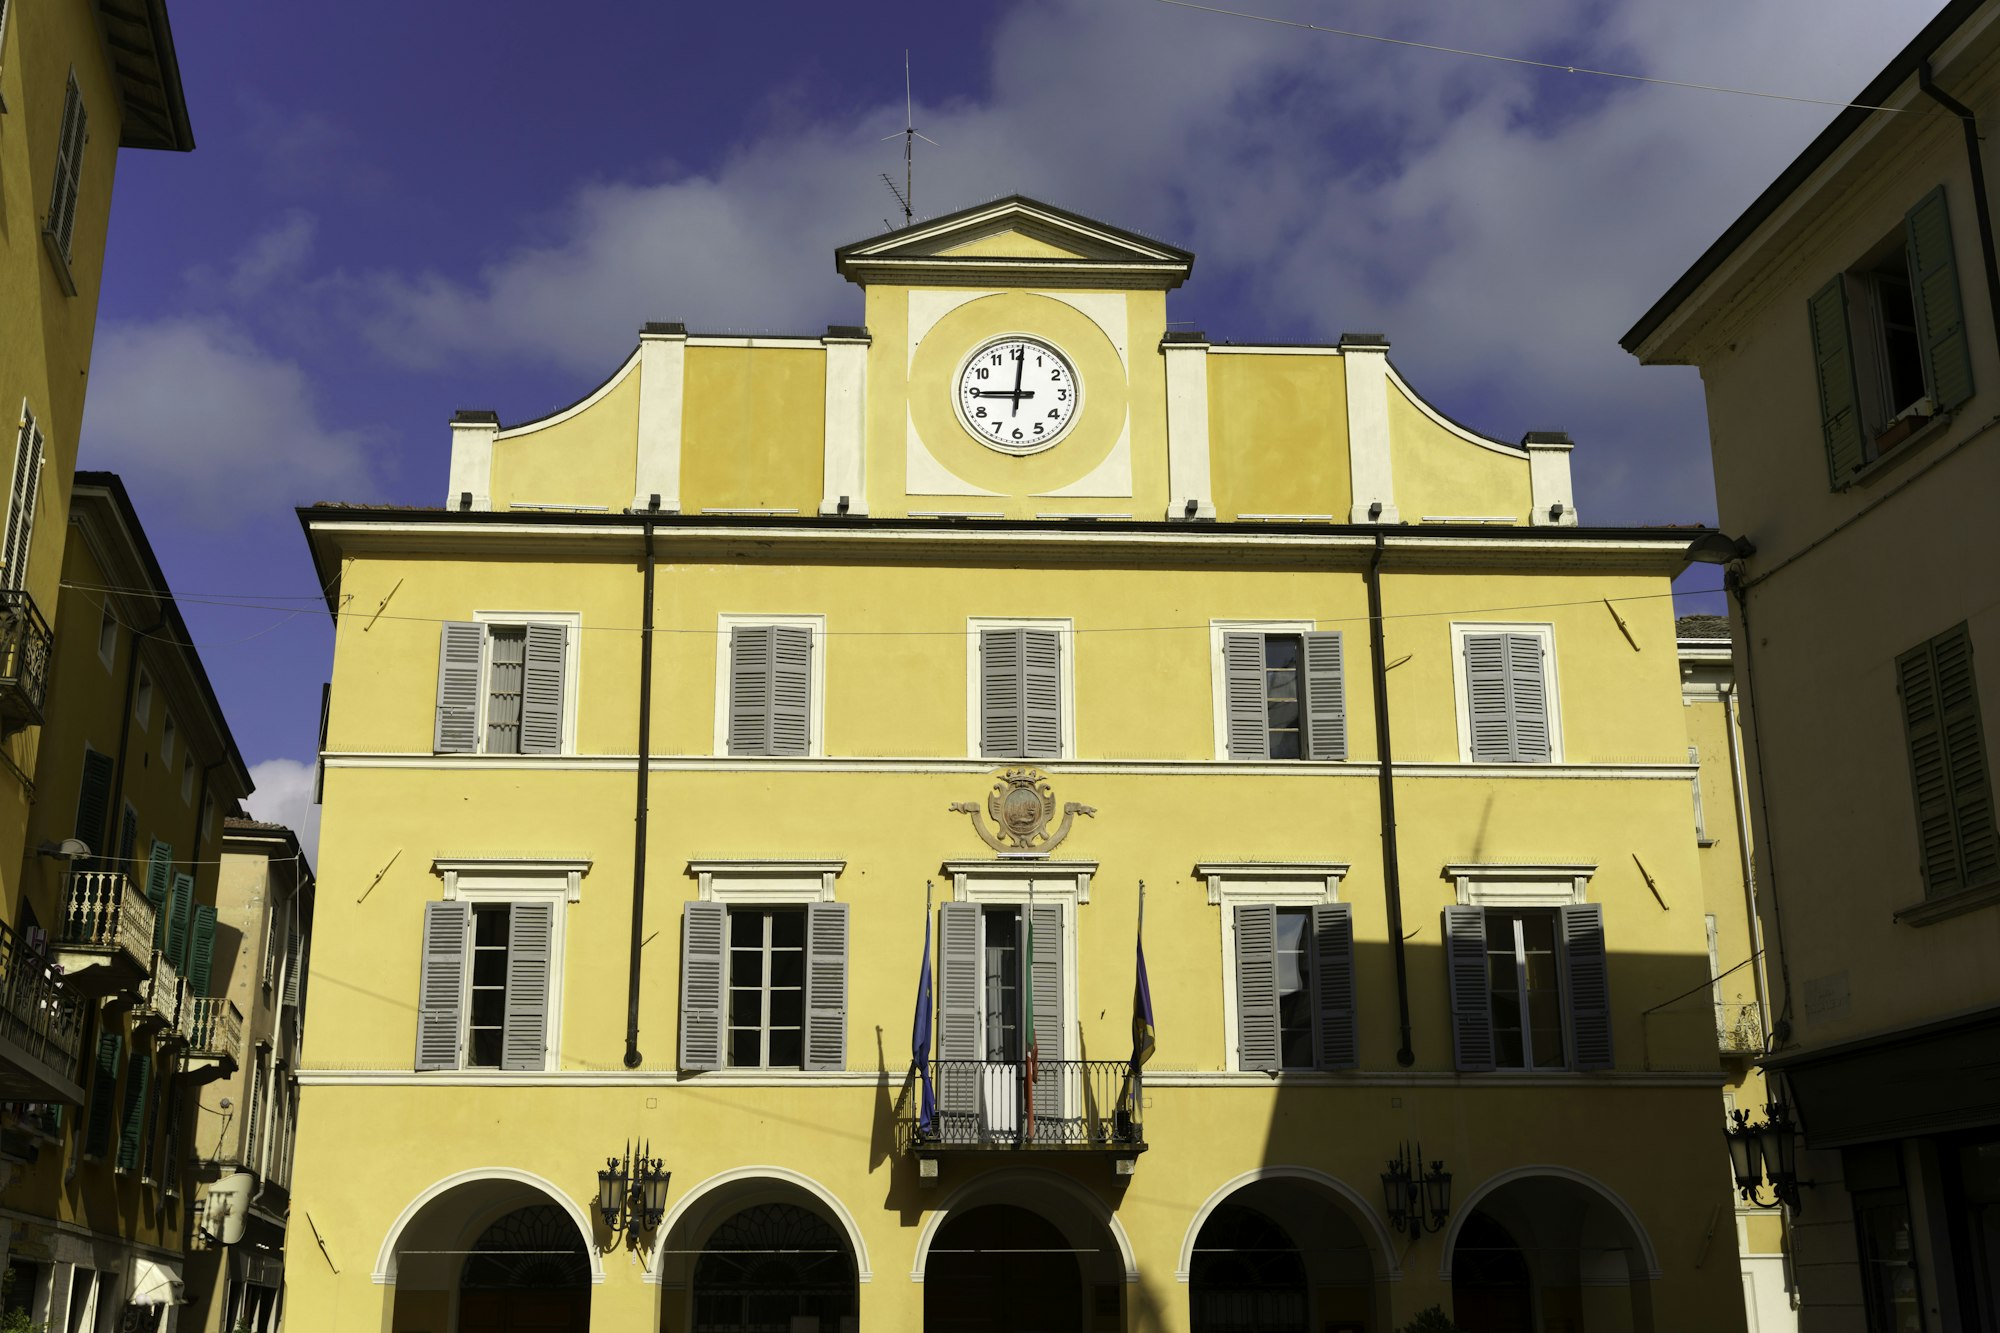 Włoski ratusz małego miasta Salsomaggiore — przykład budynku, w którym urzęduje burmistrz